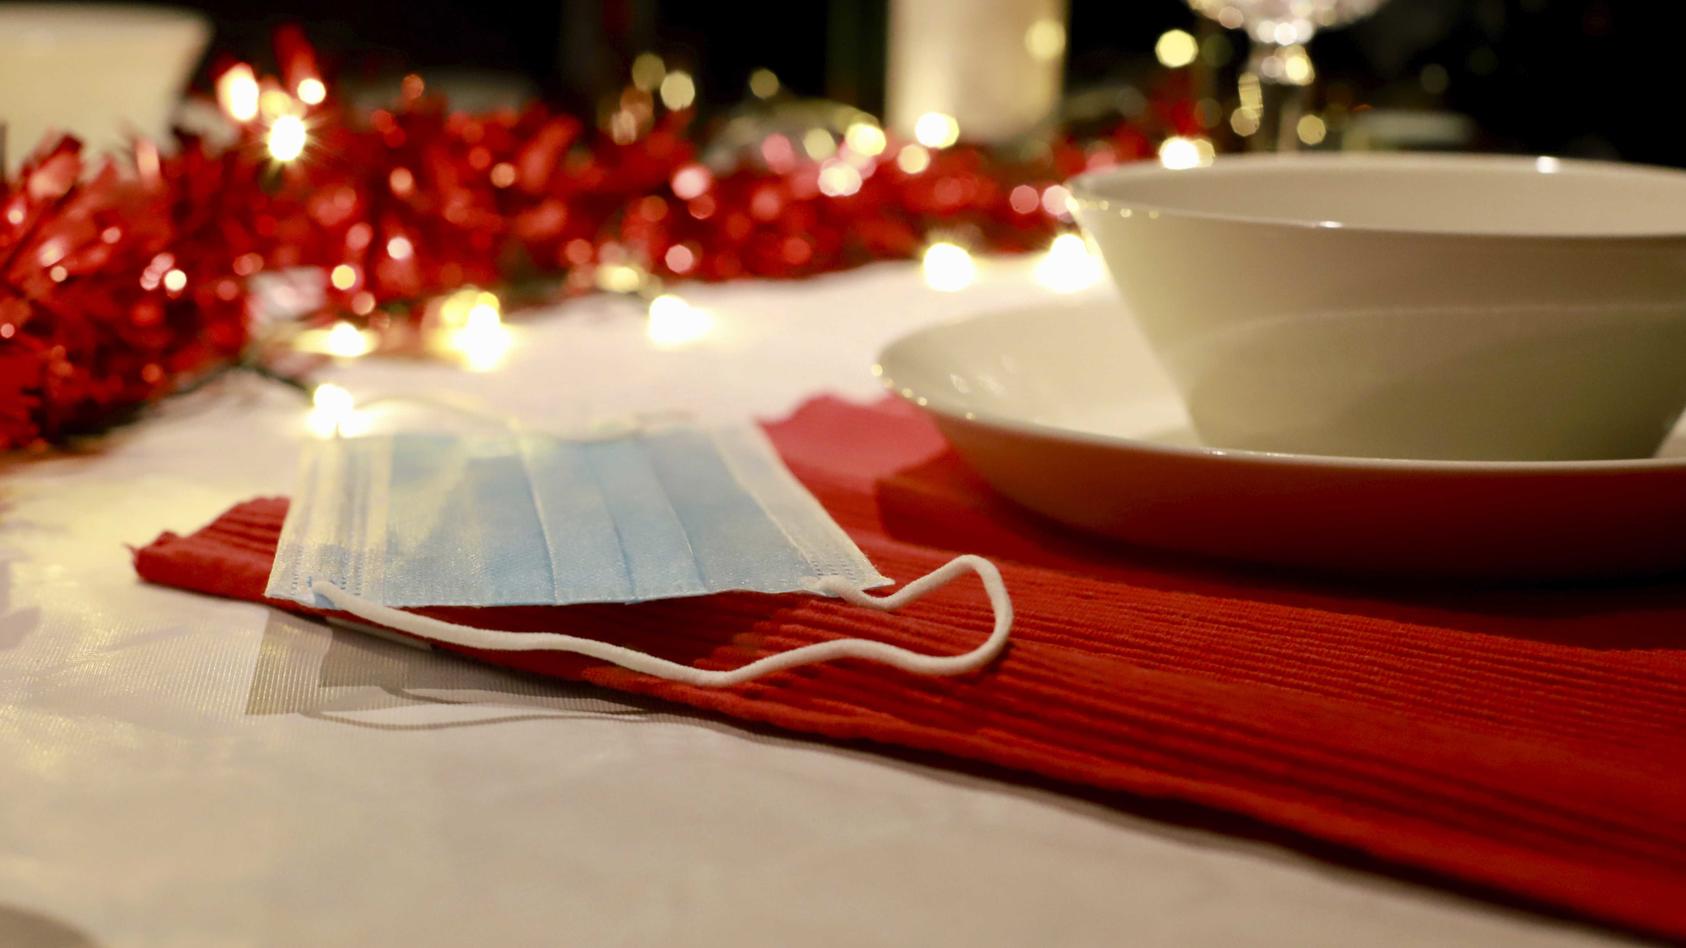 ARCHIV - 18.11.2020, Niederlande, ---: Eine Mund-Nasen-Bedeckung liegt auf einem weihnachtlich gedeckten Tisch. Die Weltgesundheitsorganisation (WHO) legt den Europäern ans Herz, an Weihnachten und Neujahr bei Festen mit Familie und Freunden einen Mu